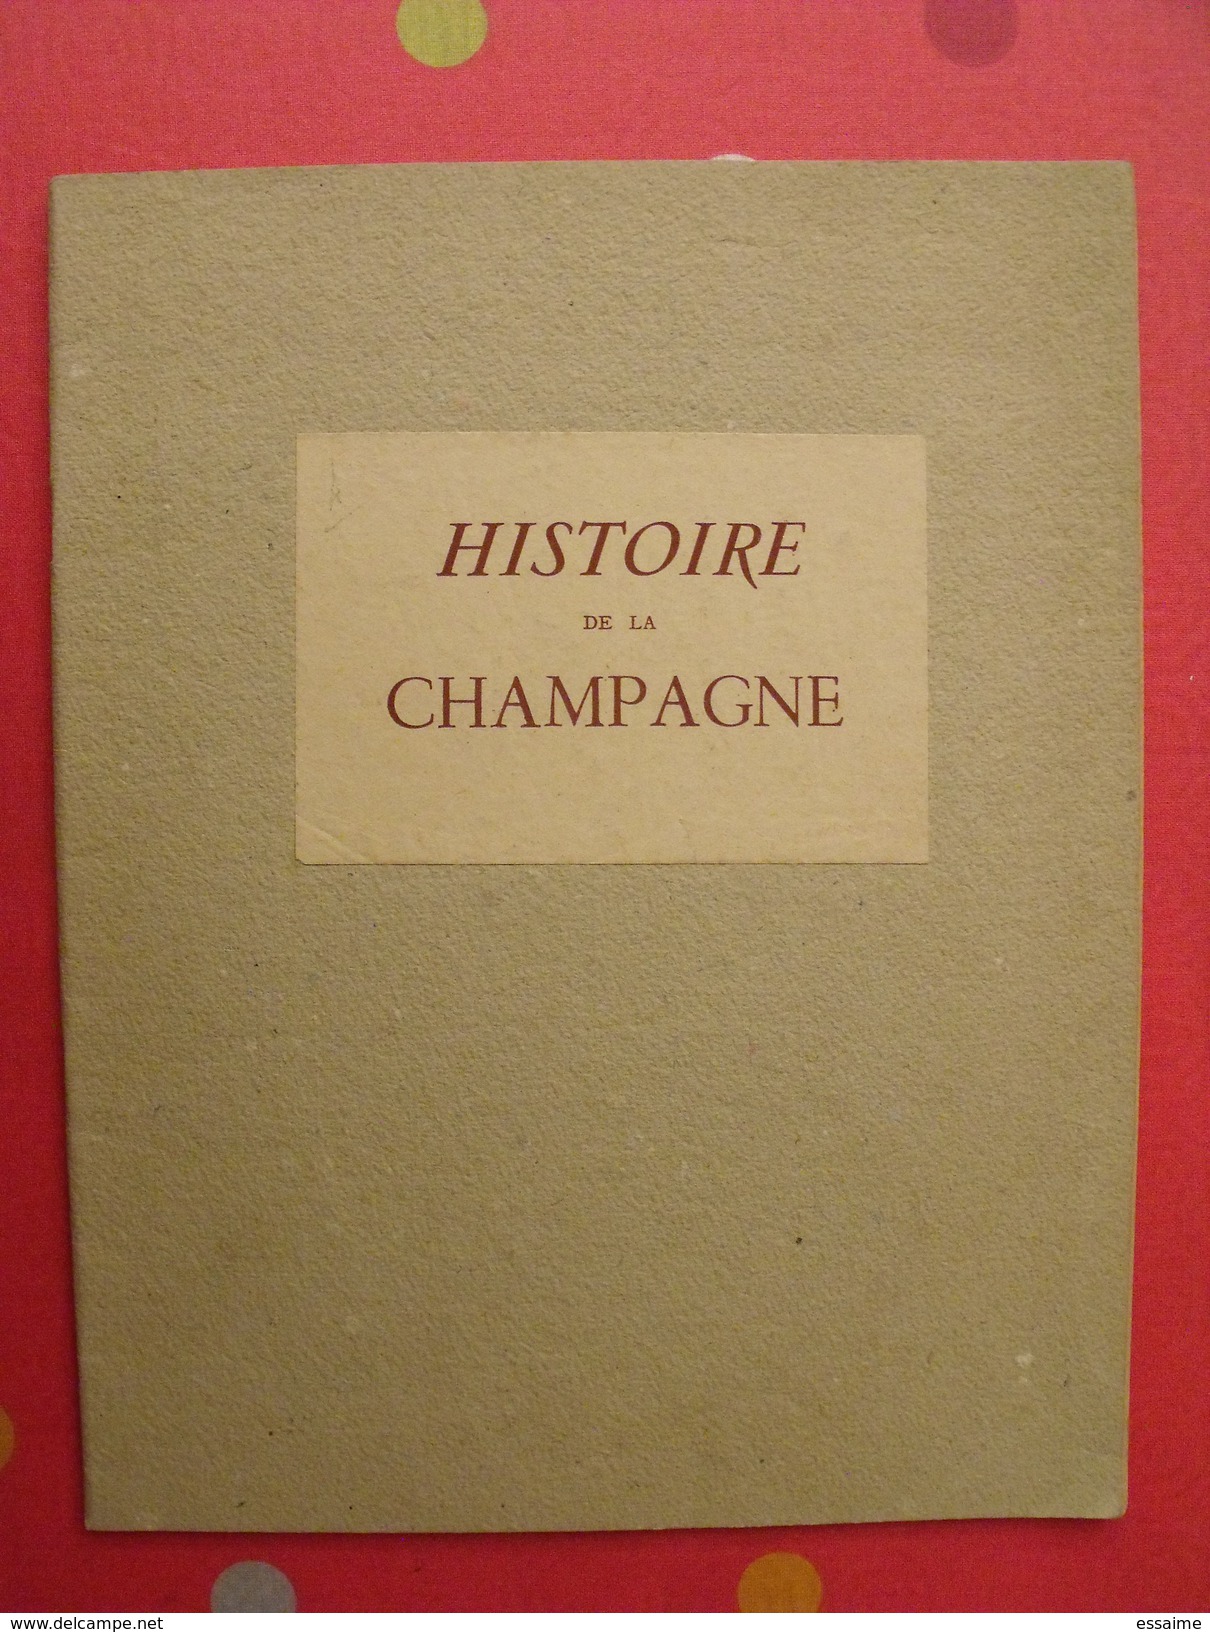 Histoire De La Champagne. 1947. Par André Petijean. Illustré Par Jean-jacques Pichard. Gründ. Reims Troyes Sens Meaux - Champagne - Ardenne